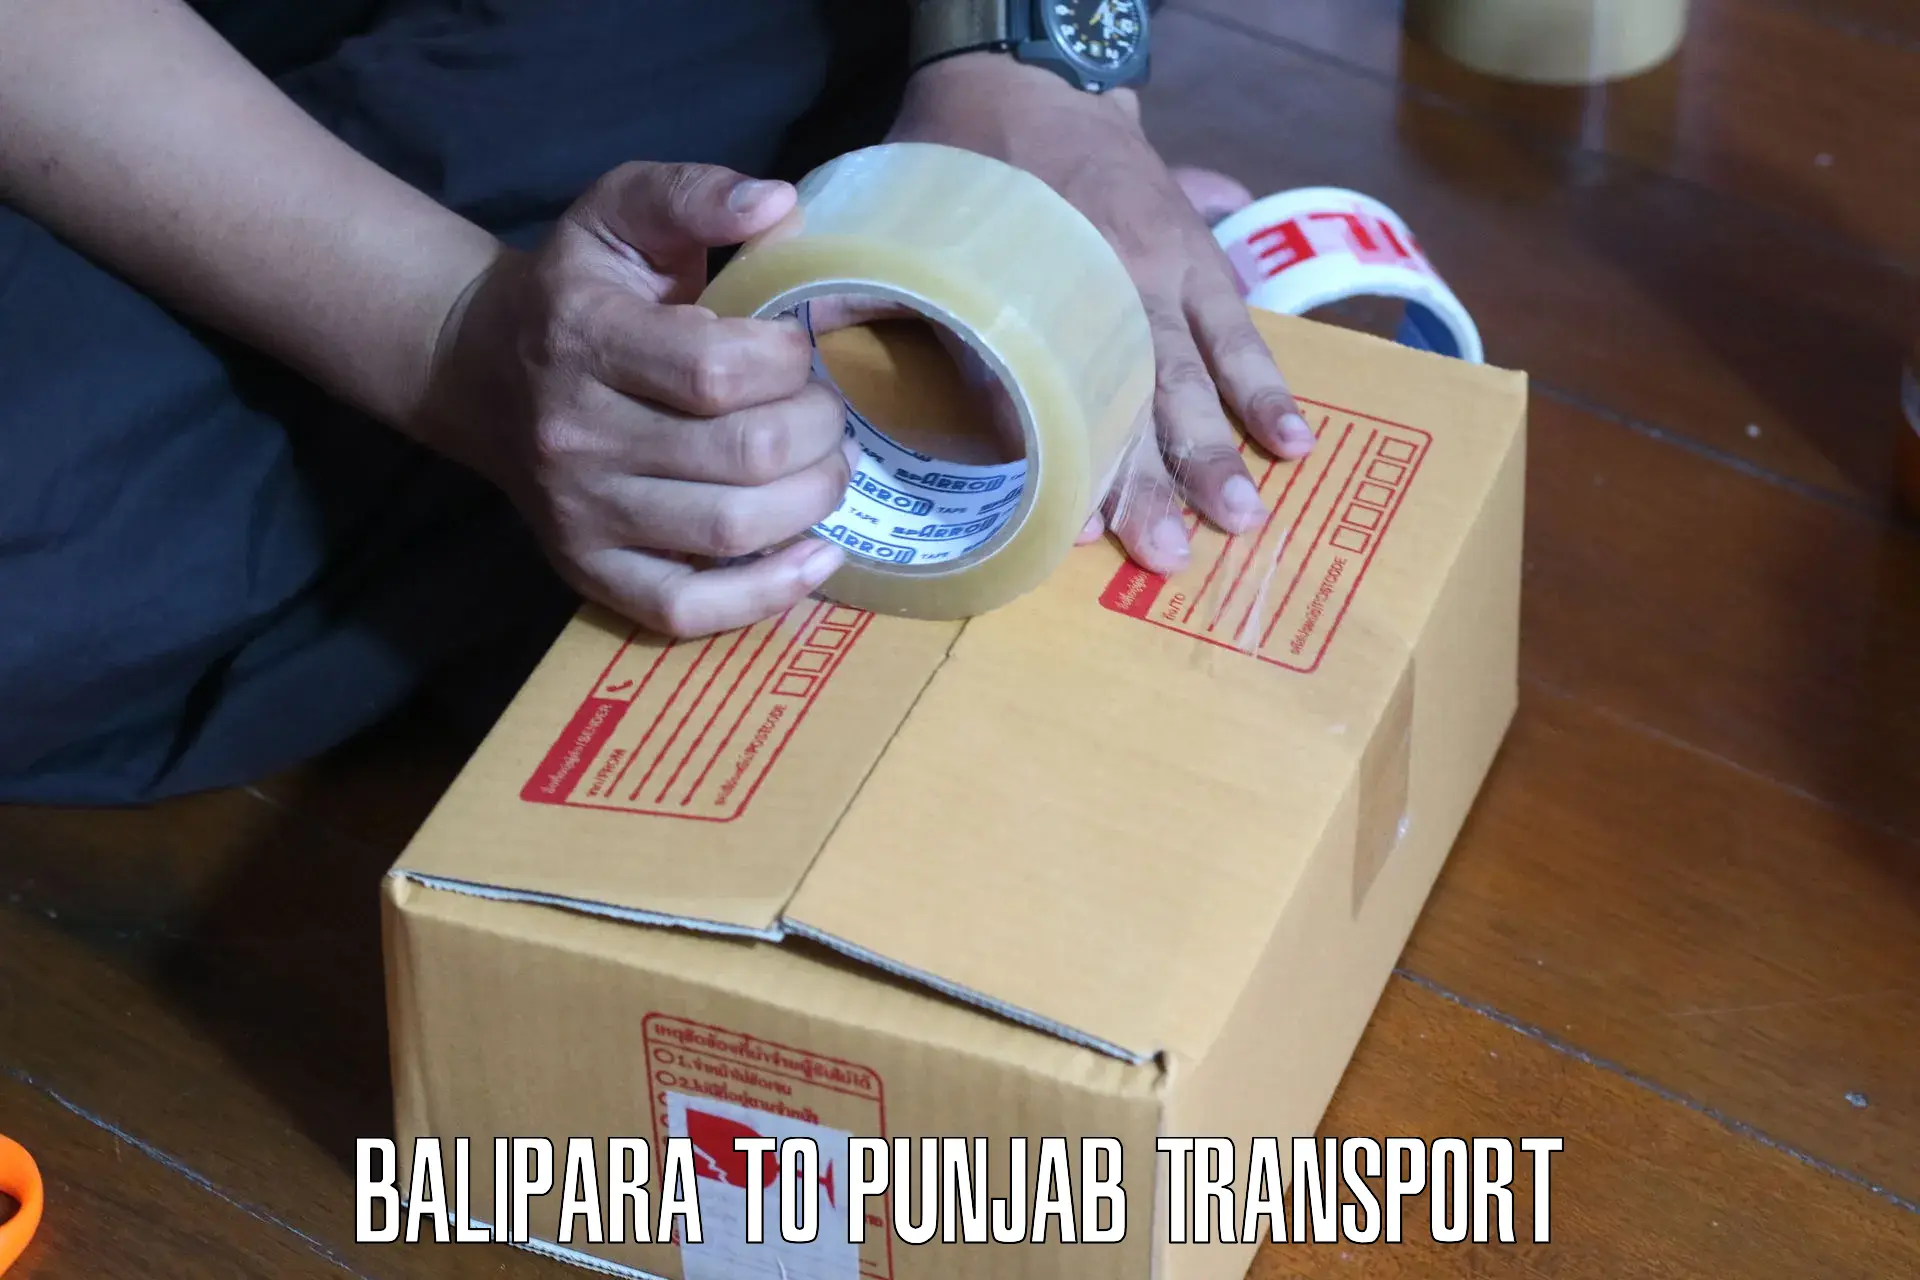 Furniture transport service Balipara to Mandi Gobindgarh